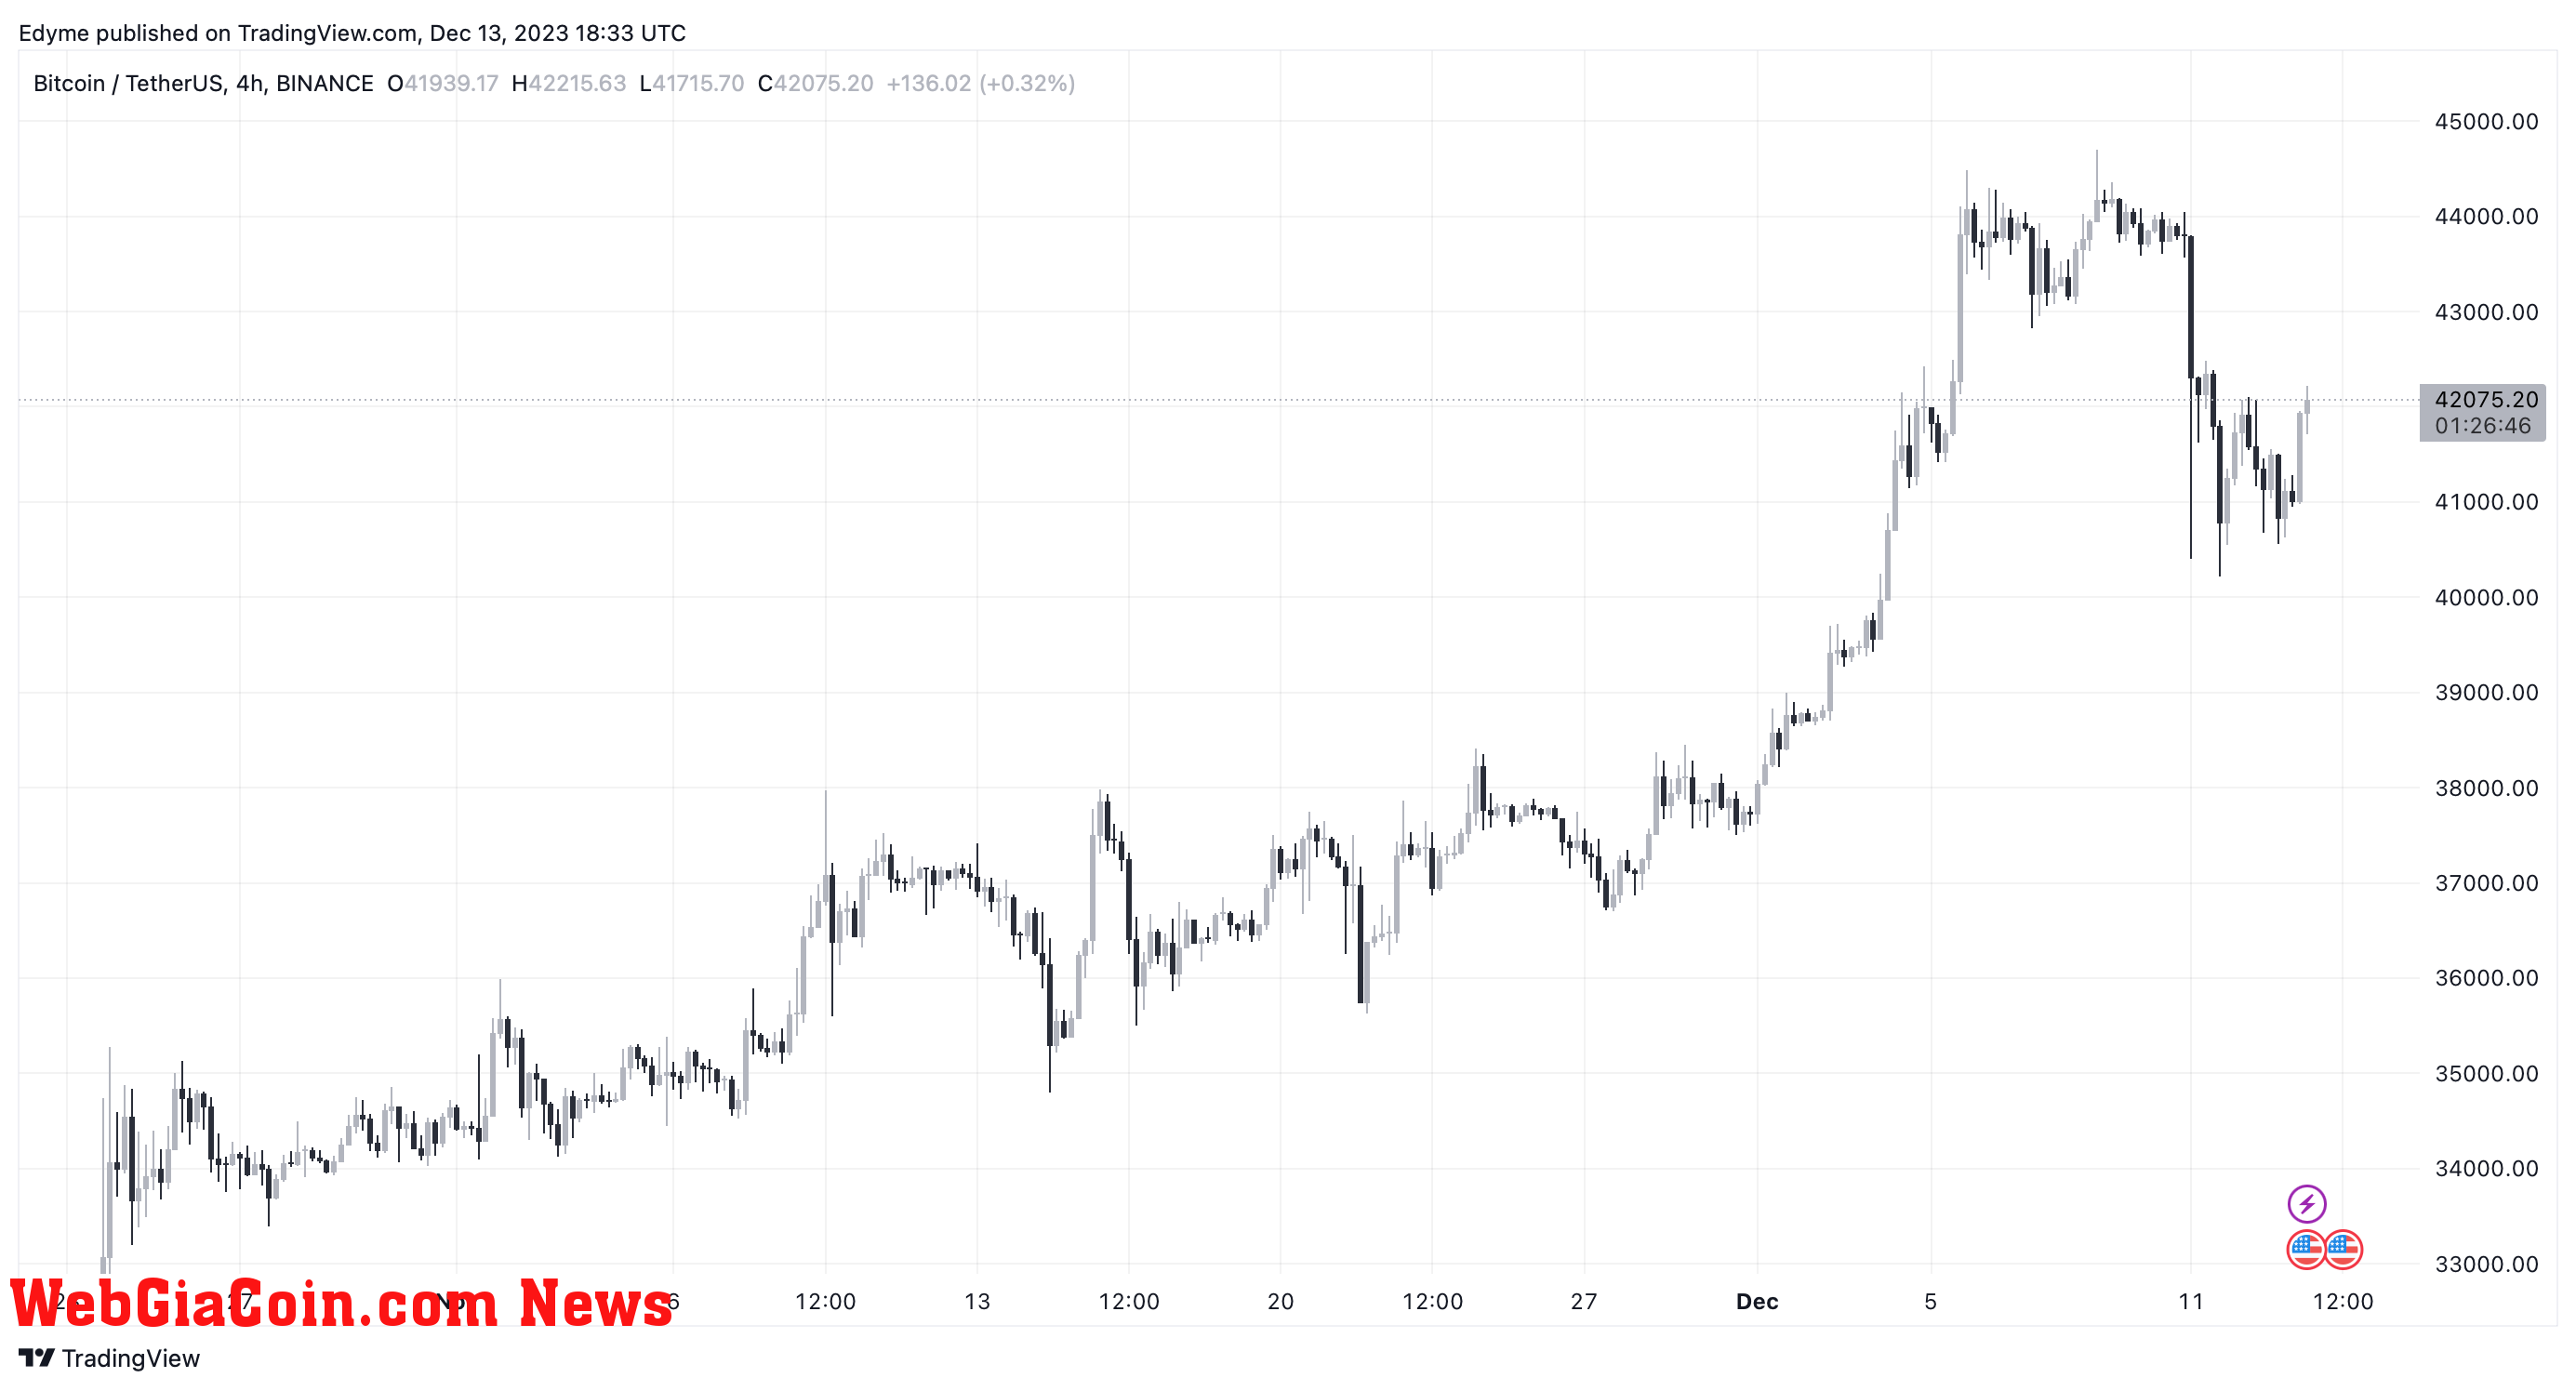 Bitcoin (BTC) price chart on TradingView amid crypto market news